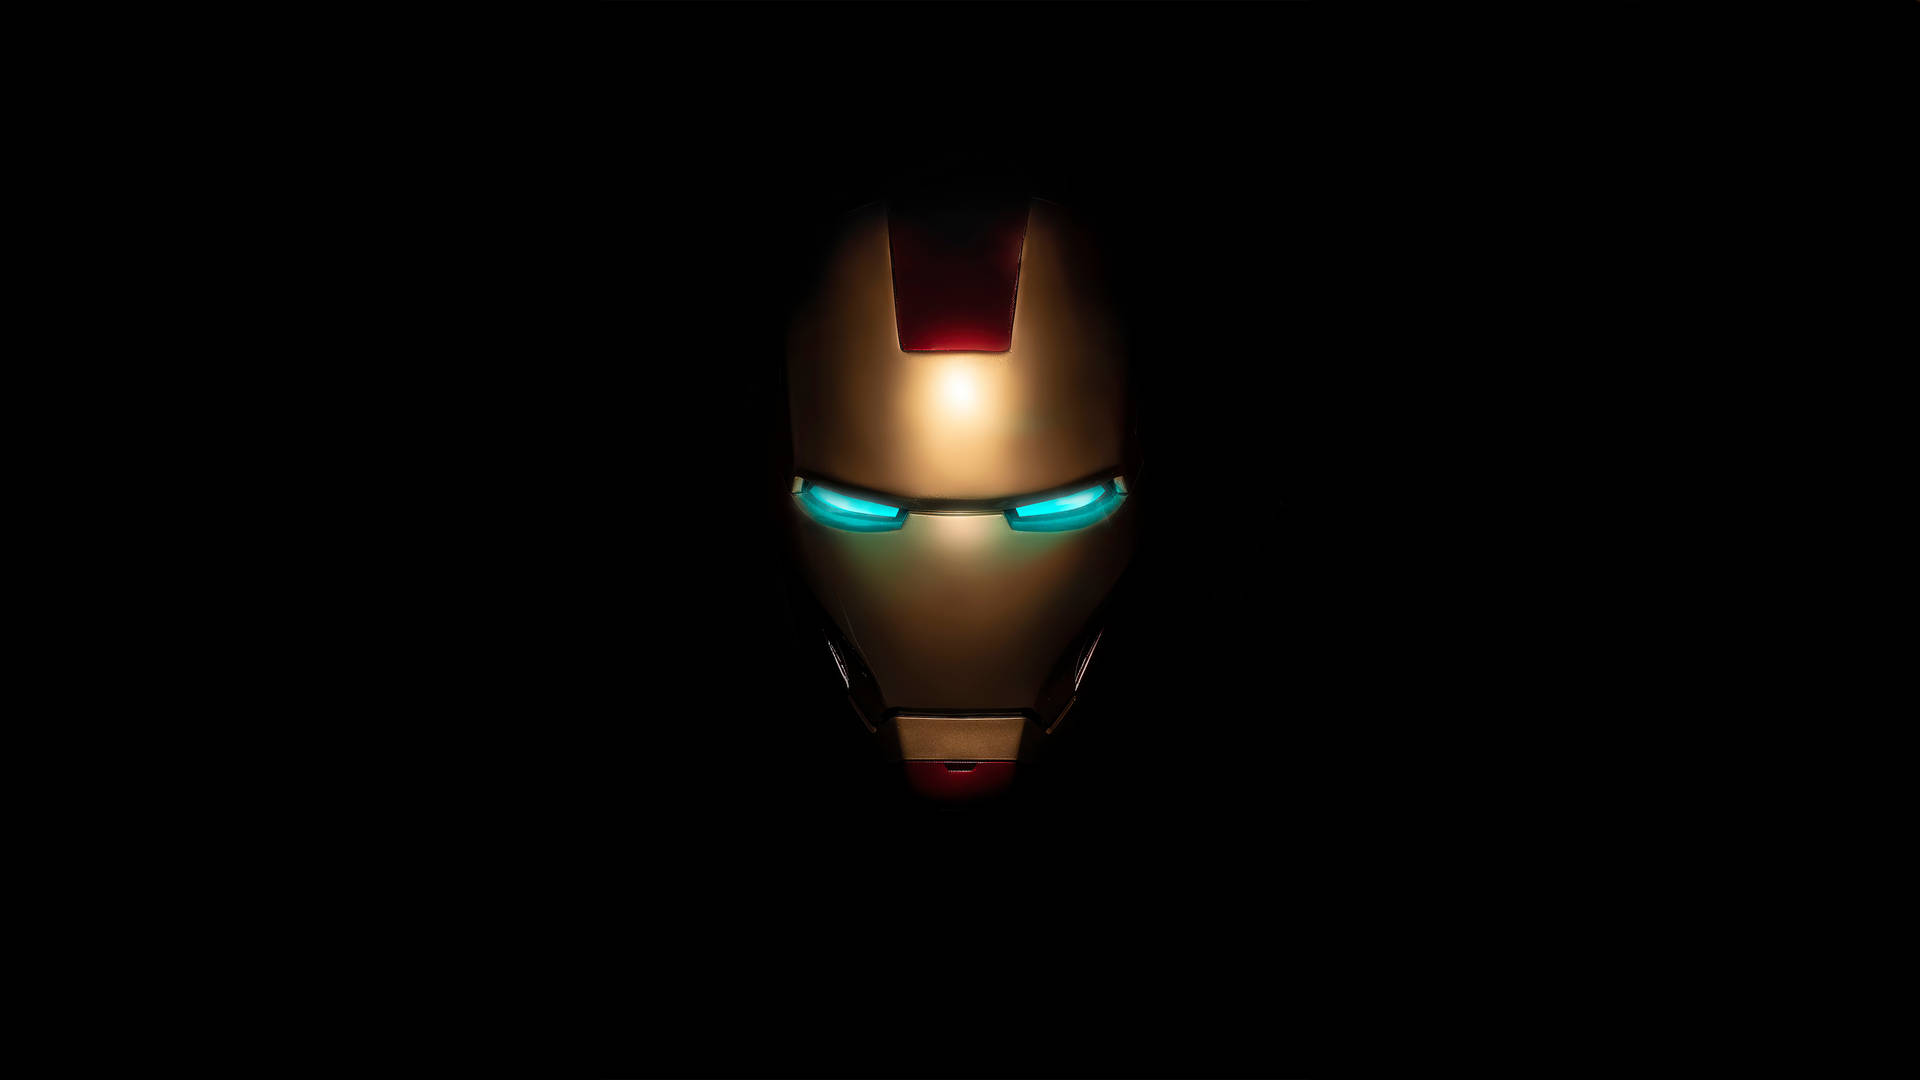 Iron Man Mask Logo On Black Wallpaper